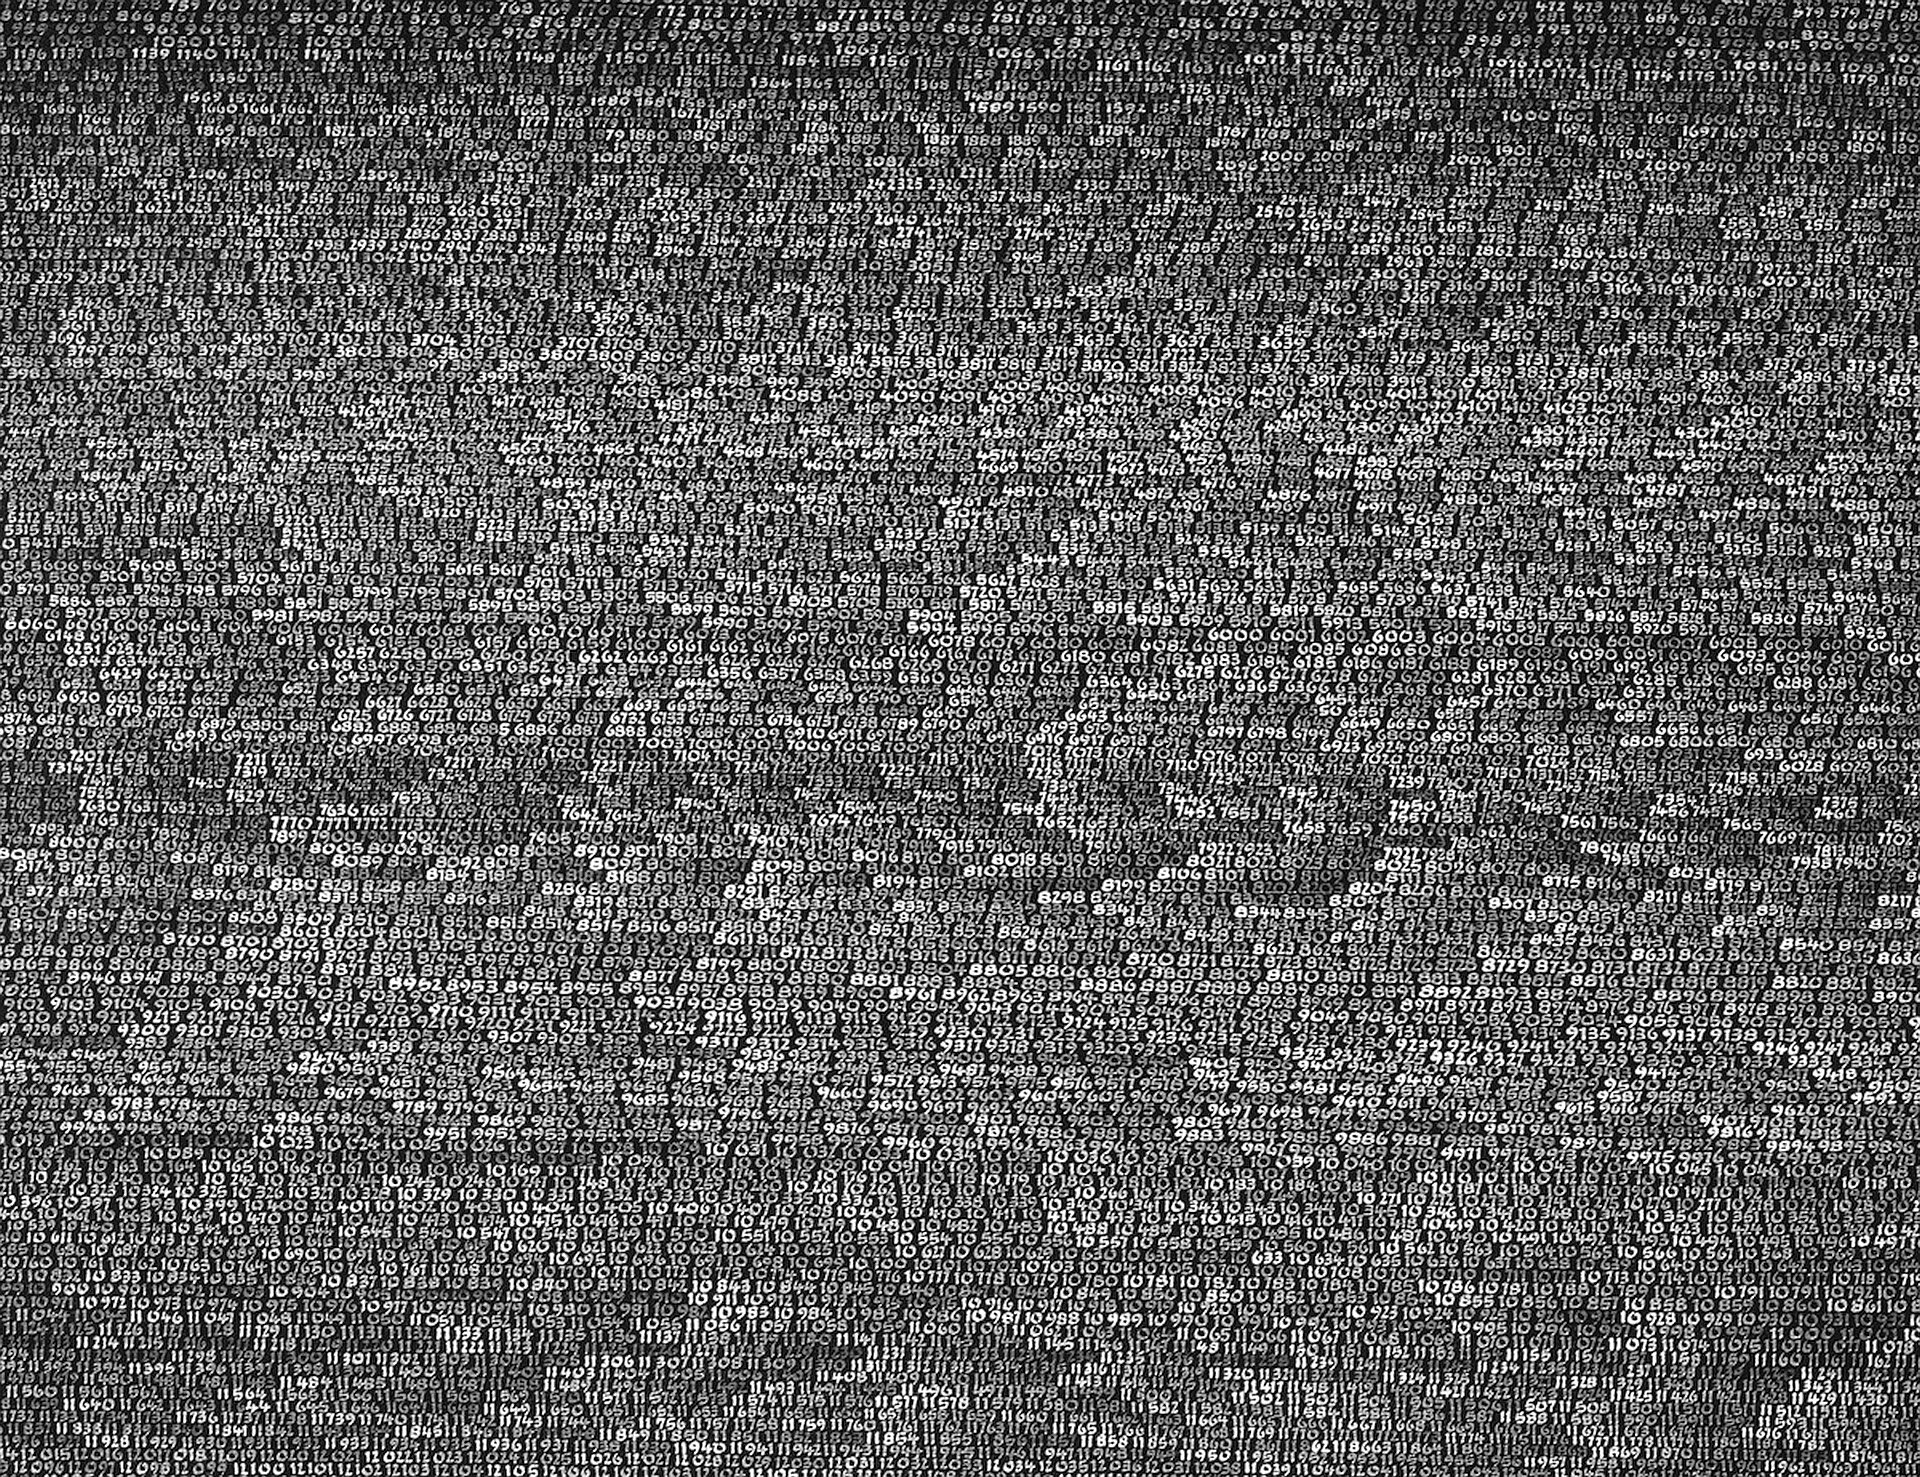 Ilustracja interaktywna o kształcie poziomego prostokąta przedstawia fotografię z wystawy pracy konceptualnej Romana Opałki „Opałka 1965 / 1 - ∞”. Zawiera zbiór cyfr zapisanych białym kolorem na szarej powierzchni. Cyfry zapisane są w rzędach, jedna za drugą. 